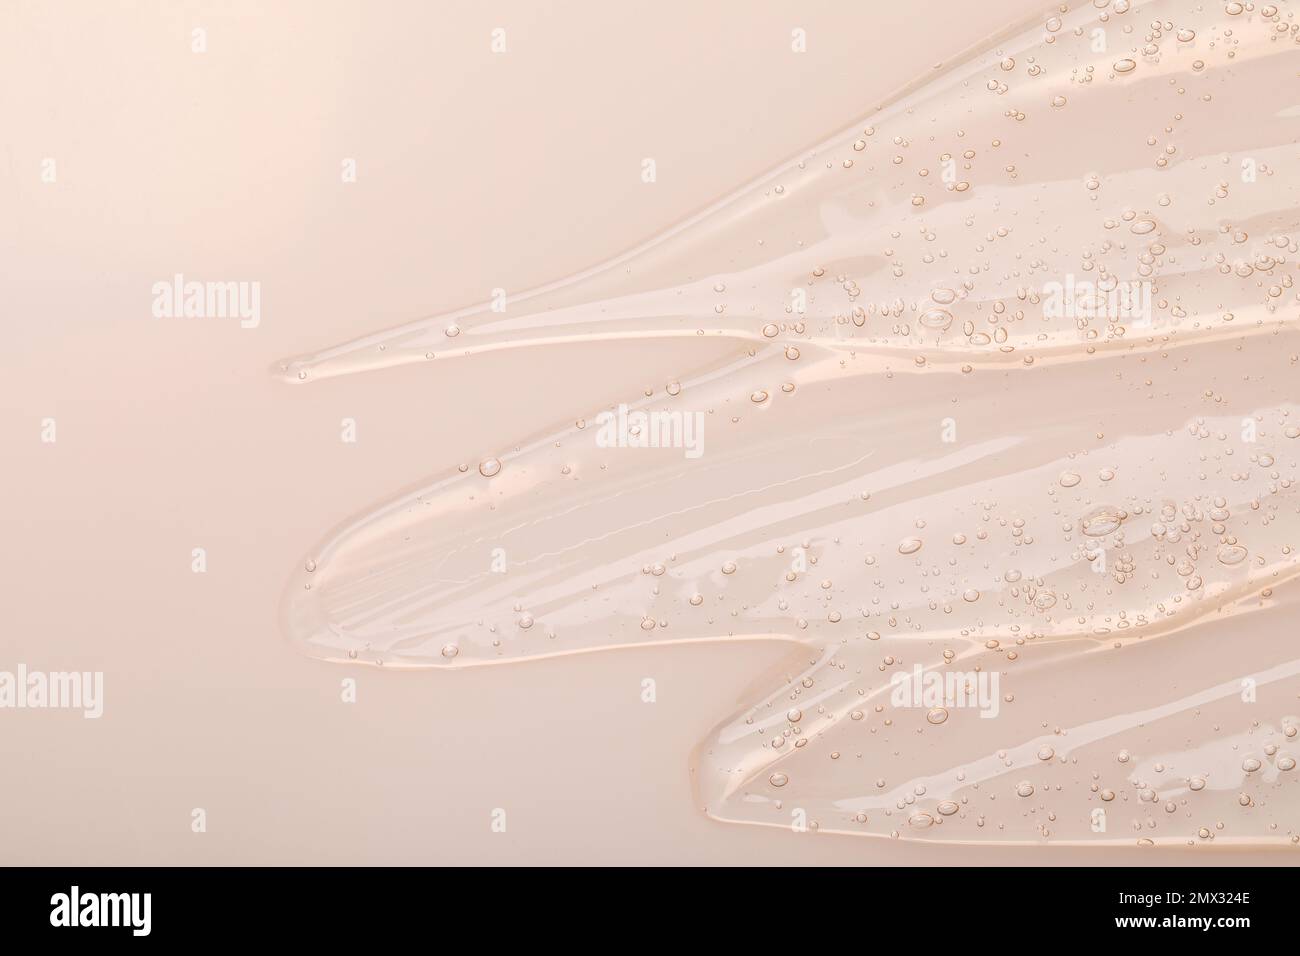 Gel cosmetico trasparente puro su sfondo beige, vista dall'alto Foto Stock